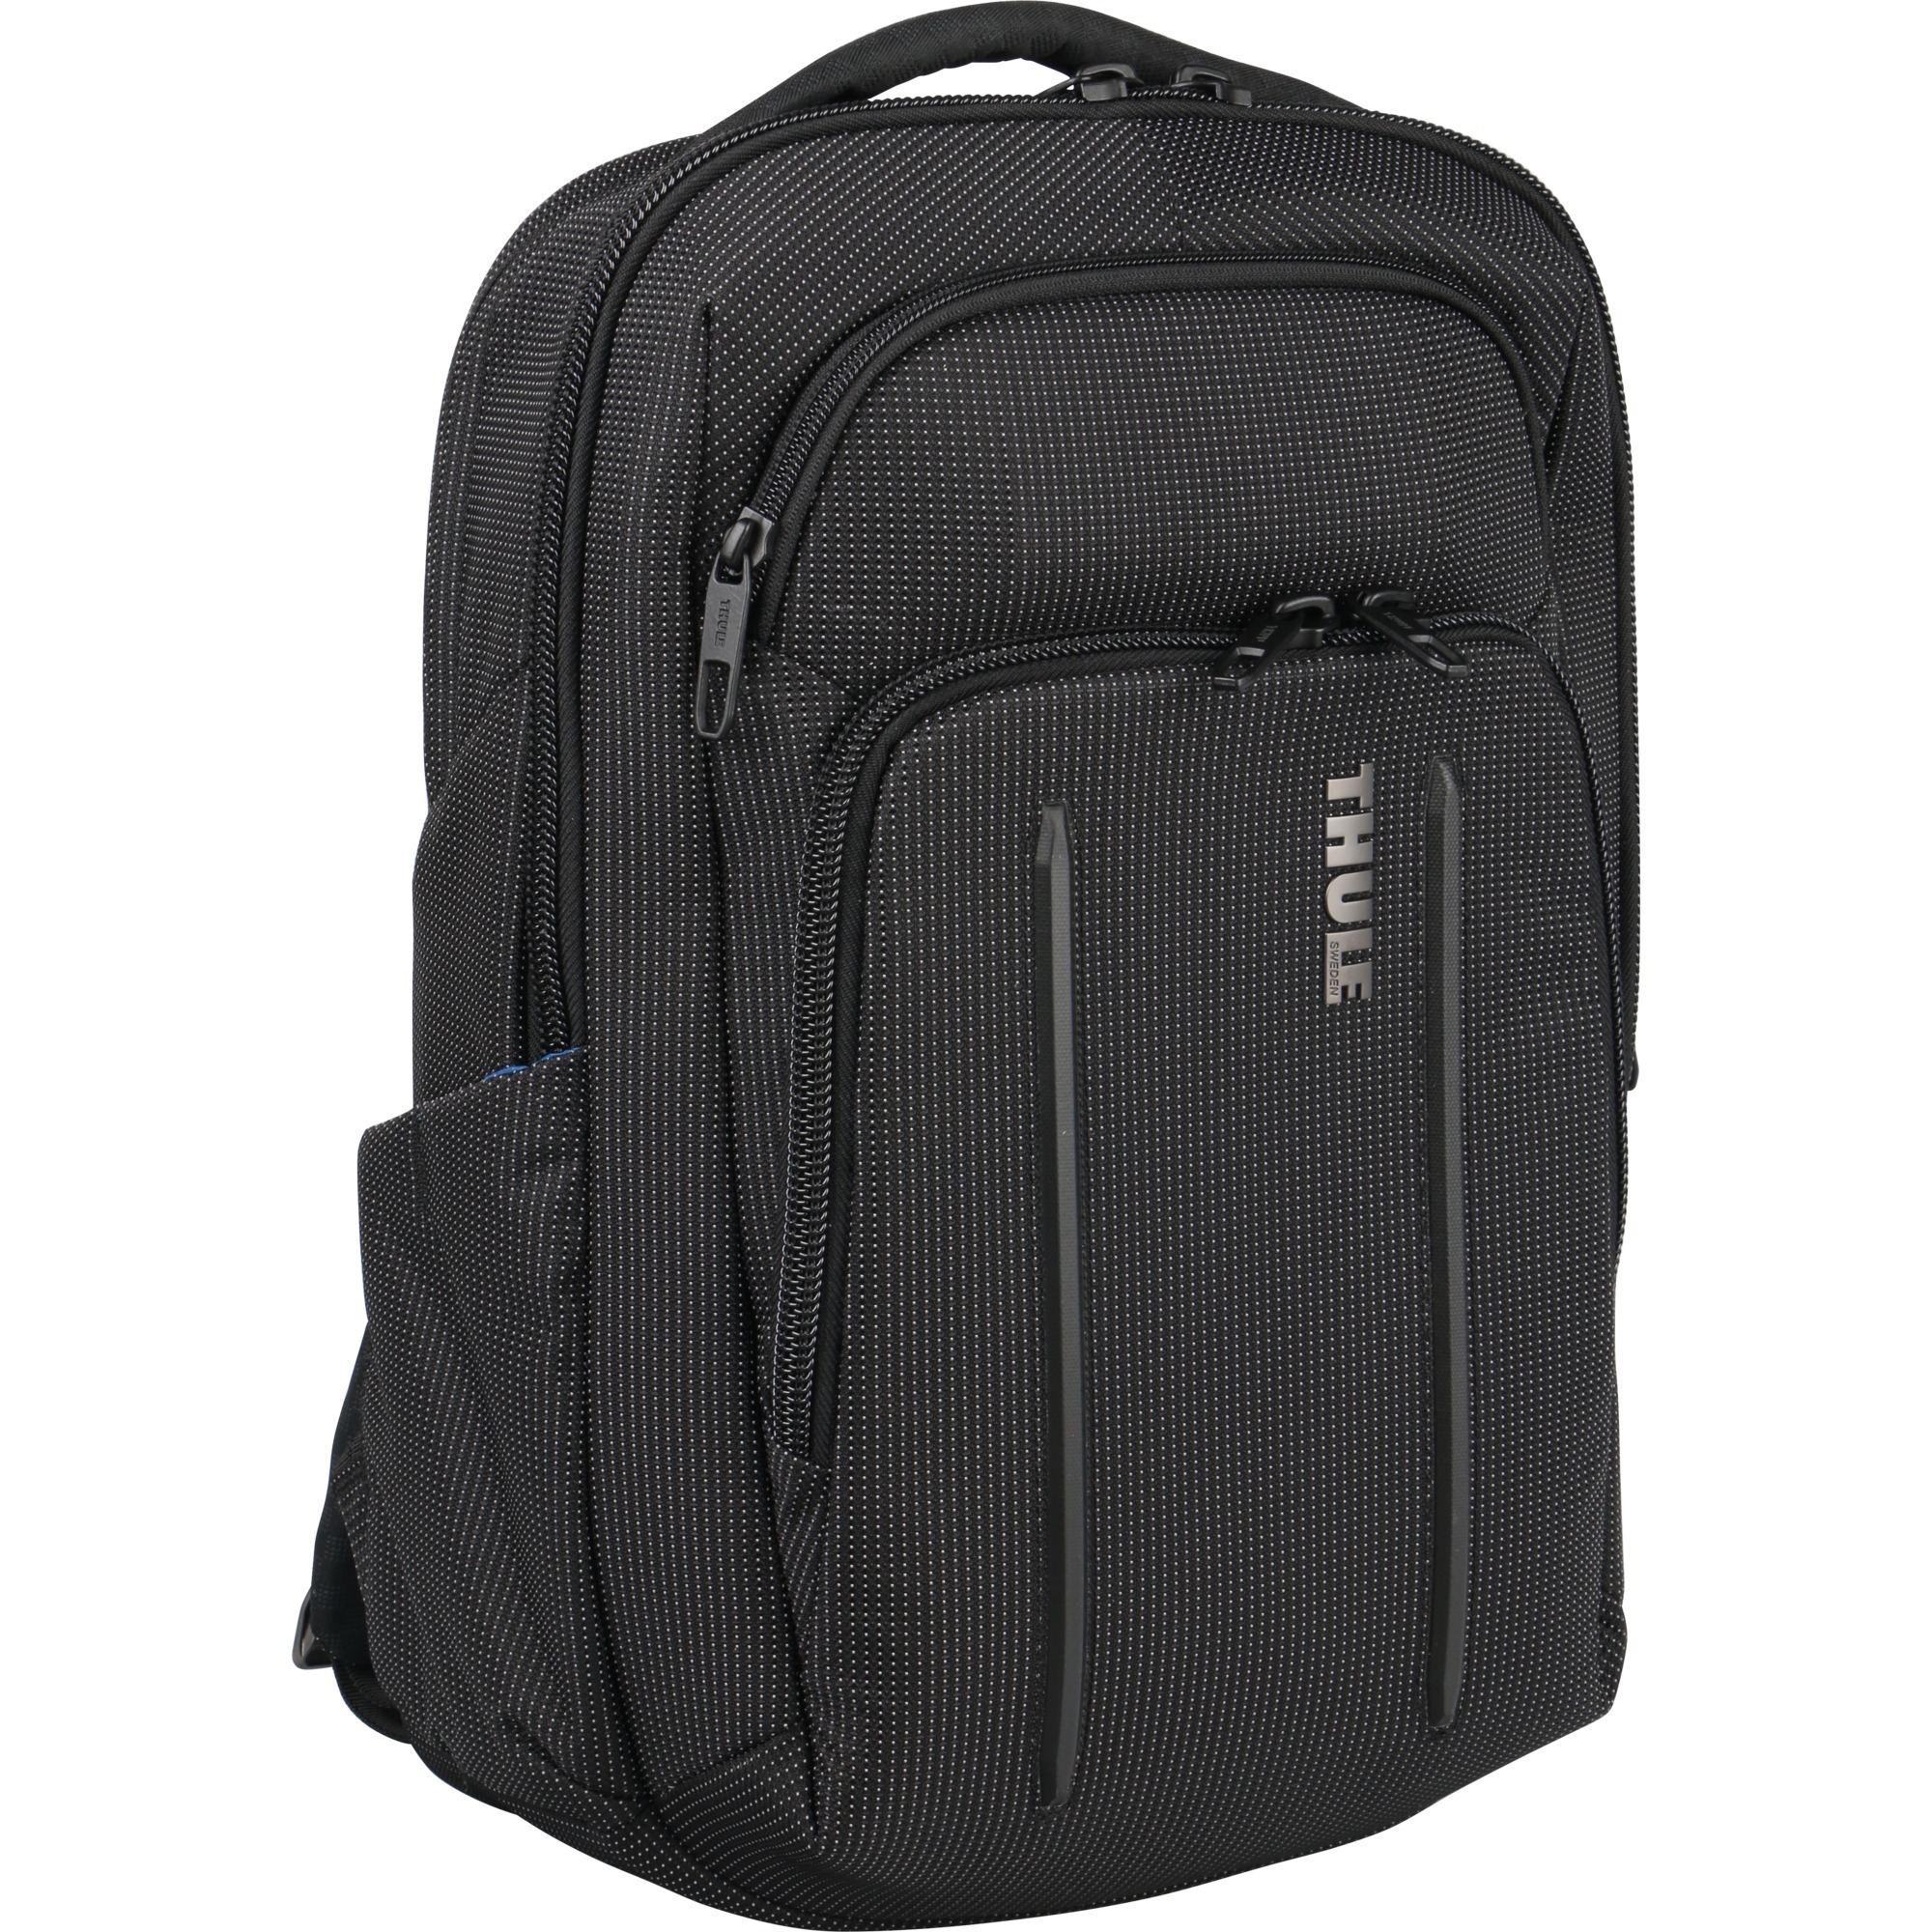 Image of Alternate - Crossover 2 Backpack 20L, Rucksack online einkaufen bei Alternate